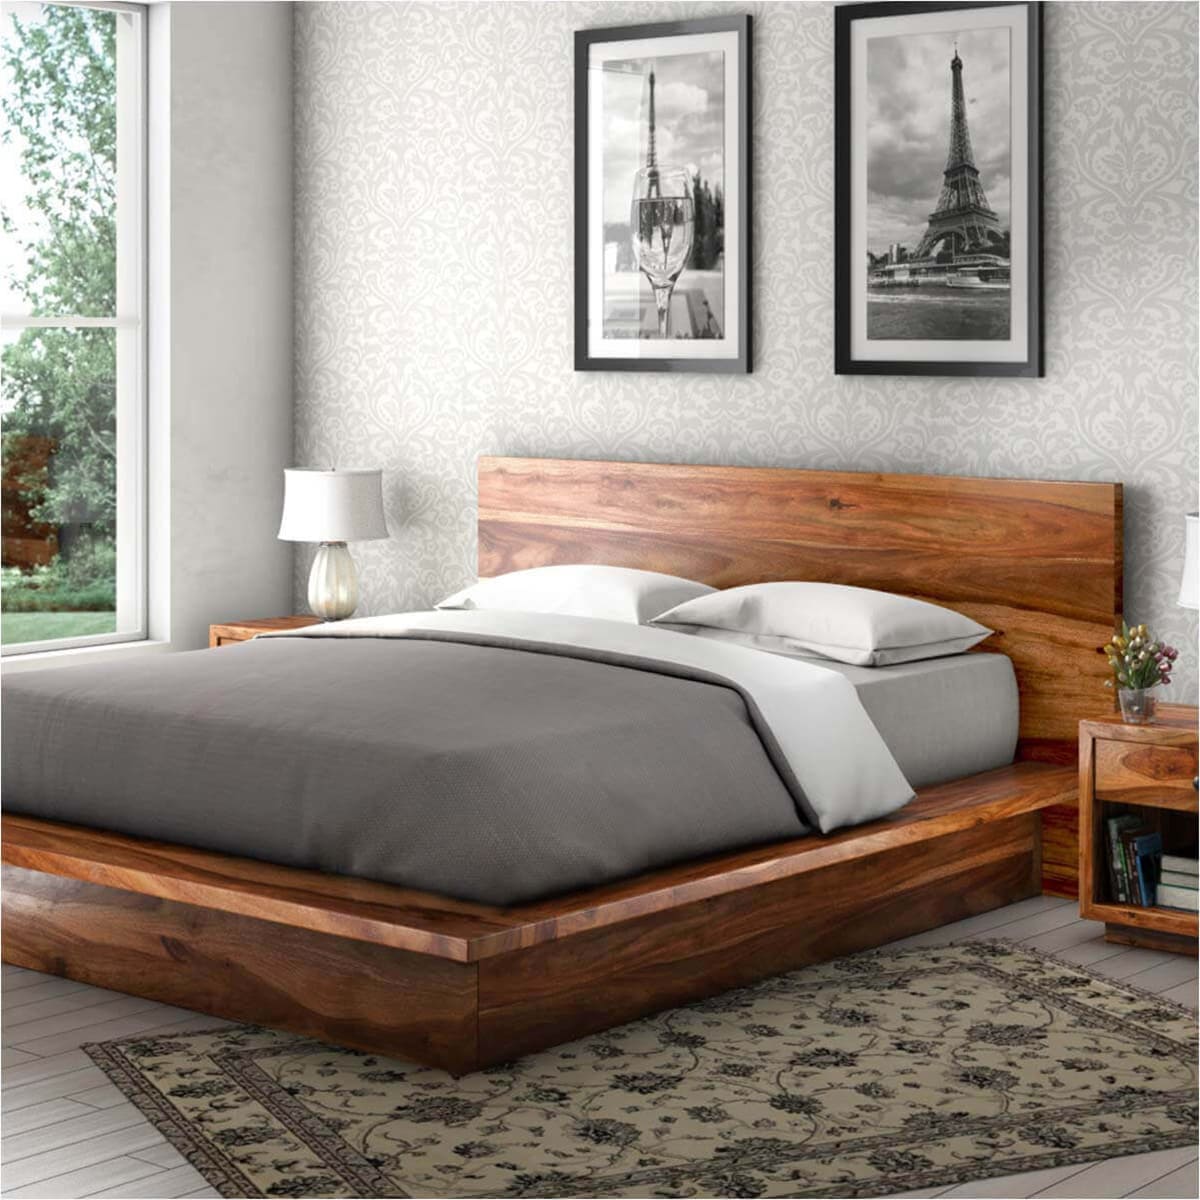 Mẫu giường gỗ đẹp 1 